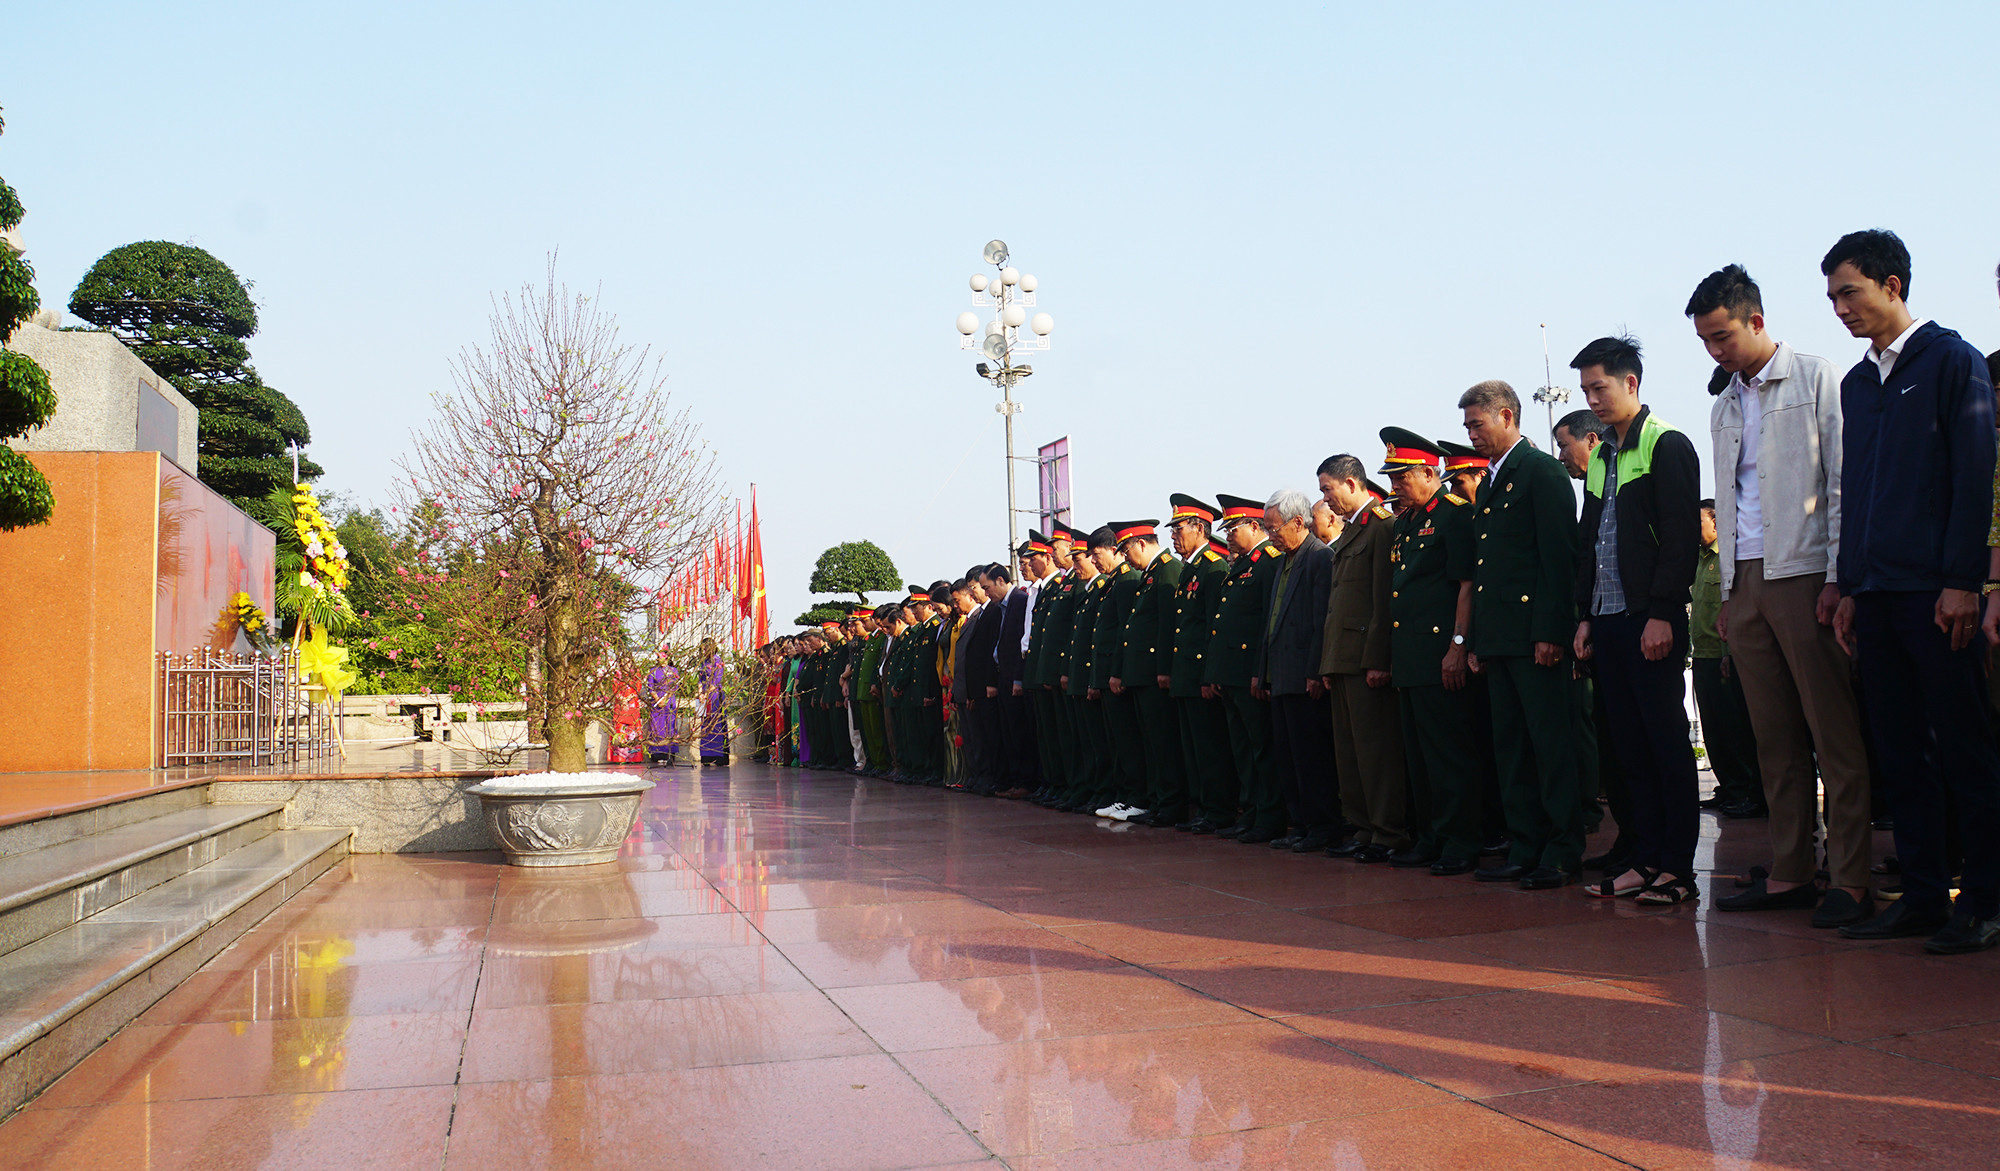 Trước lễ khai mạc, các đại biểu cùng toàn thể thành phần tham dự dâng hoa trước anh linh Chủ tịch Hồ Chí Minh. Ảnh: Trung Kiên